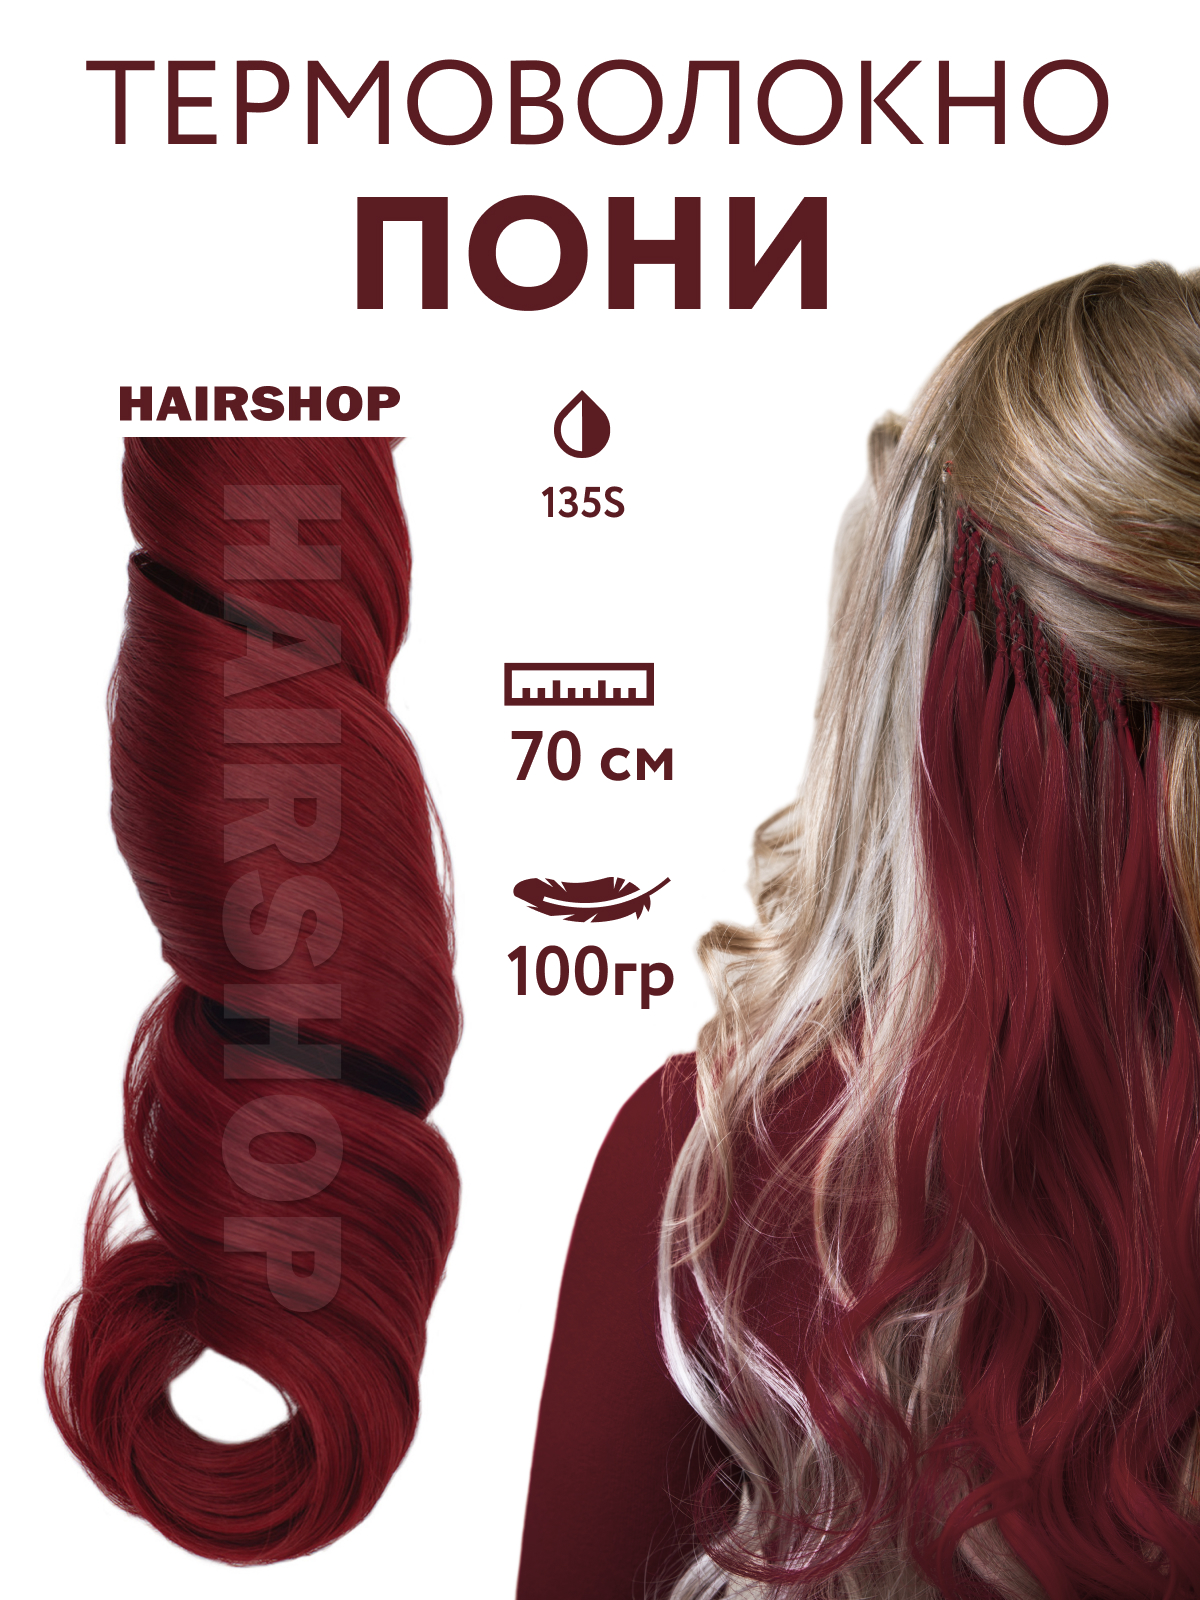 Канекалон Hairshop Пони HairUp для точечного афронаращивания 135-1 Красно-коричневый 1,4м серьги лягушка красно зелёный в серебре